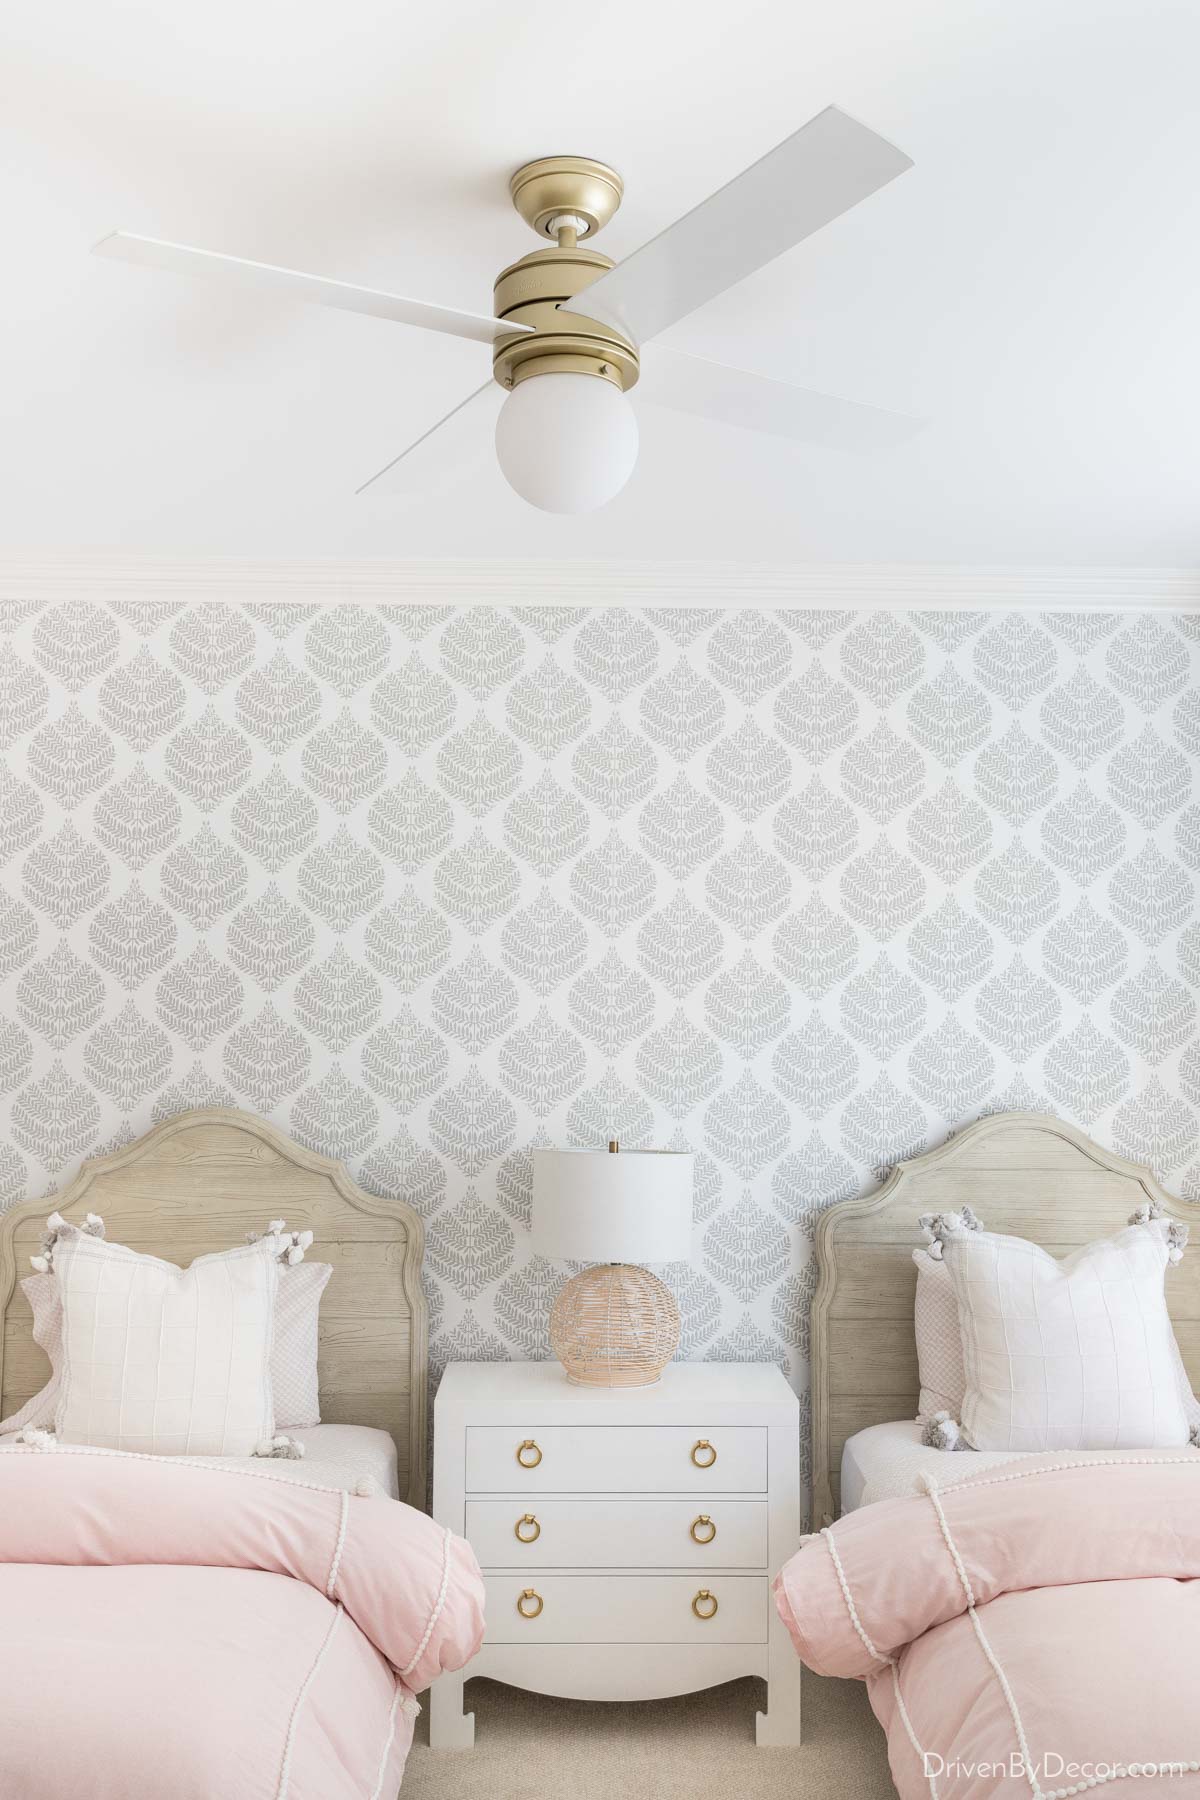 A favorite bedroom ceiling fan! Love the globe light!